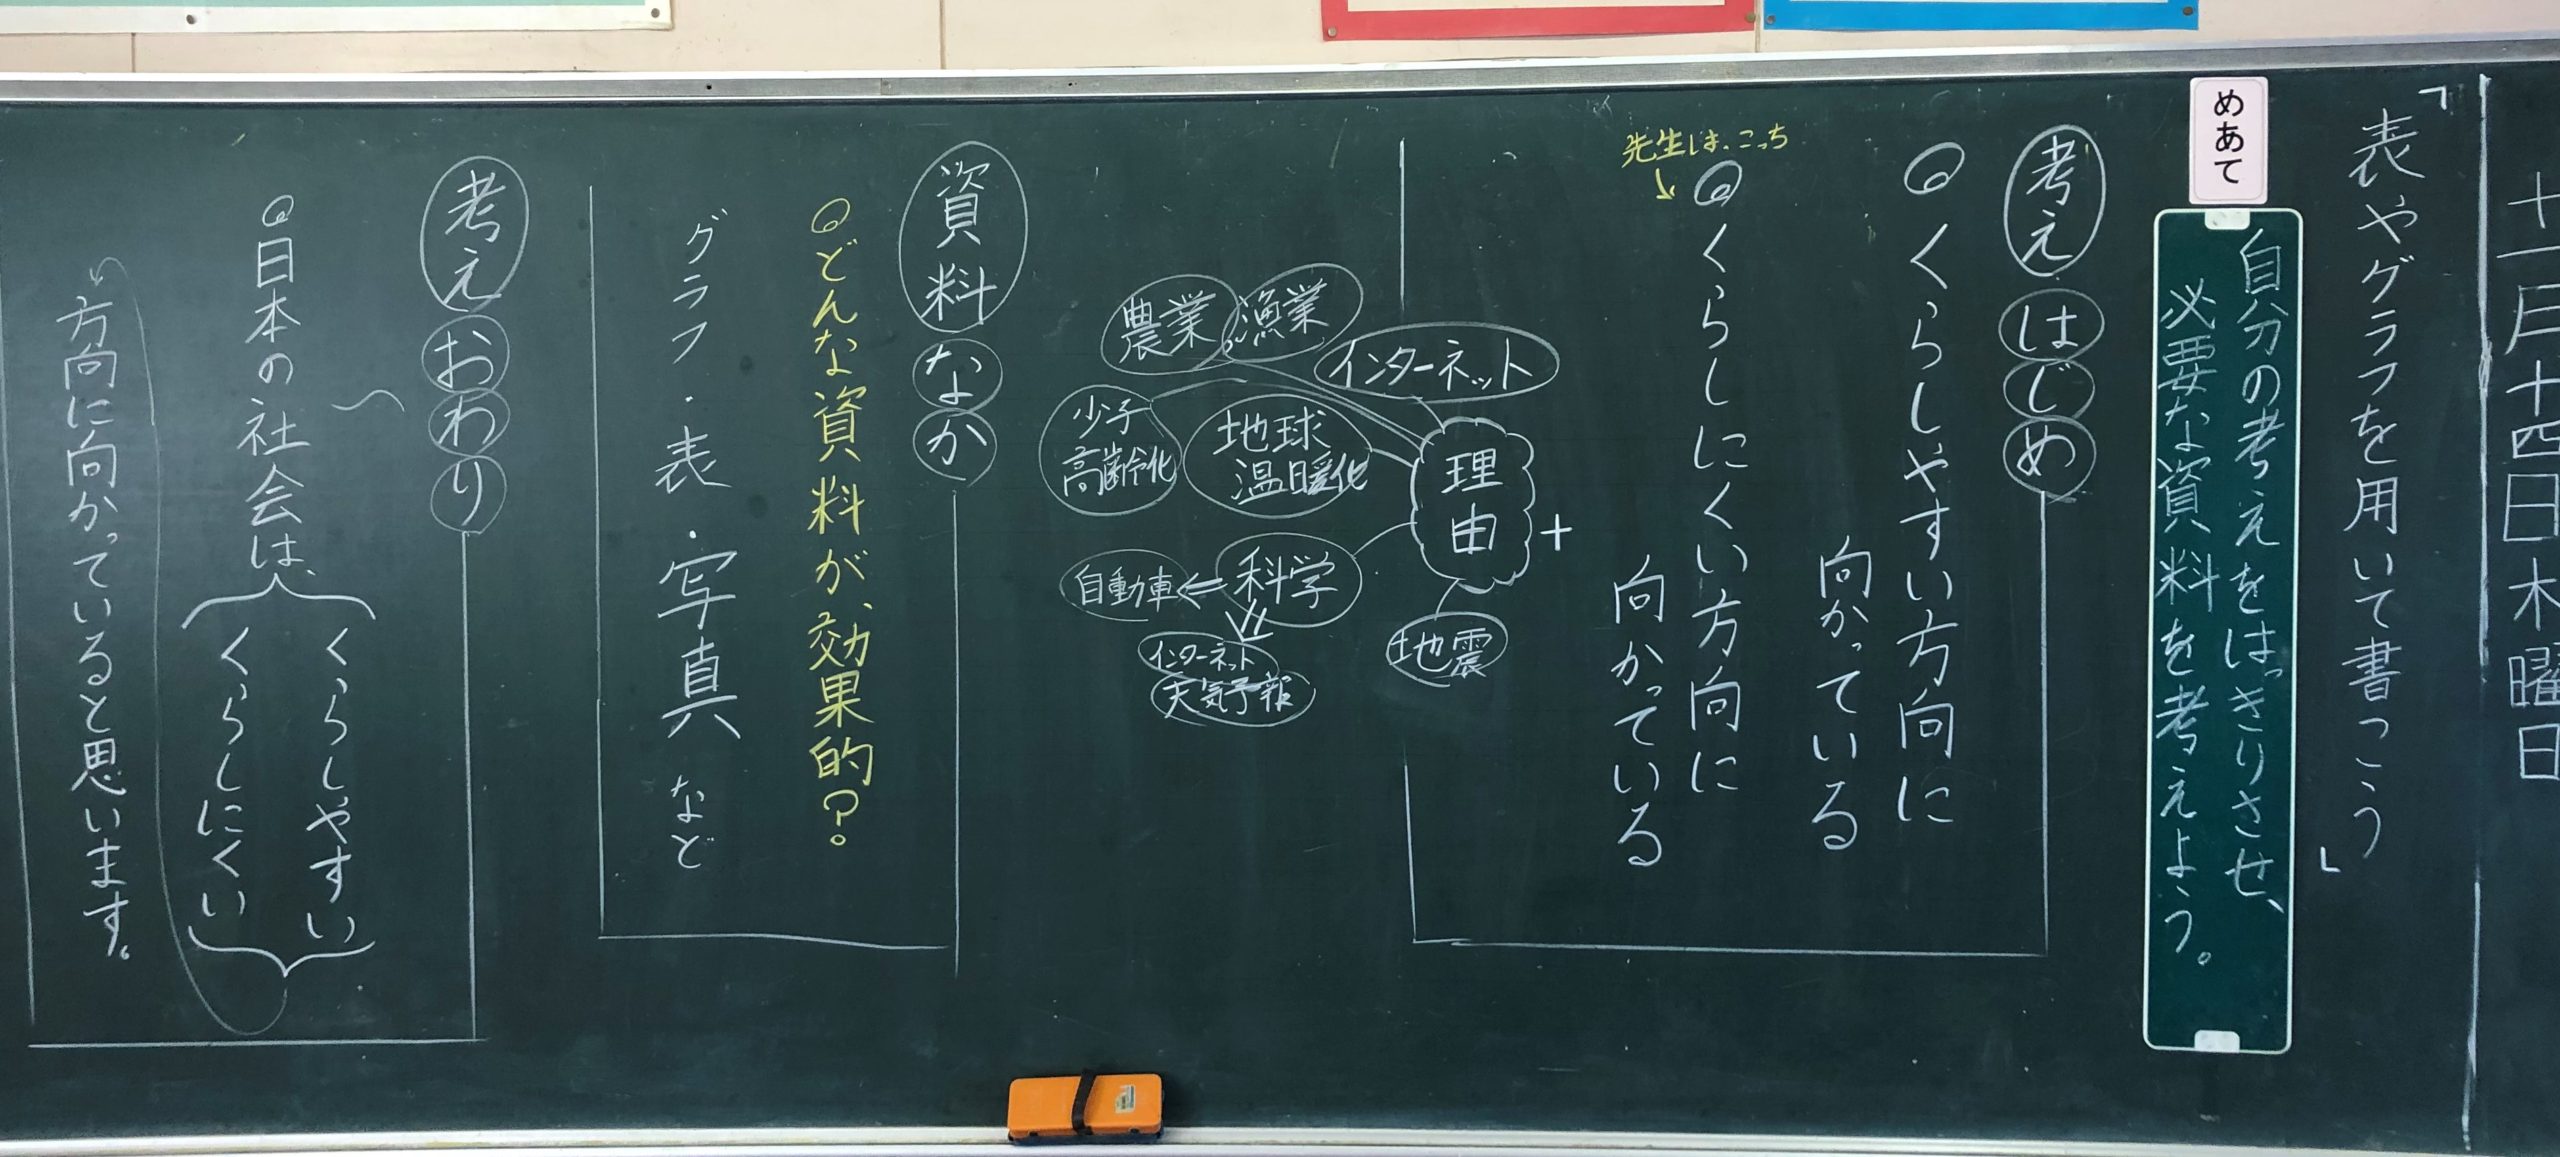 5年生国語 表やグラフを用いて書こう 黒板log 黒板log